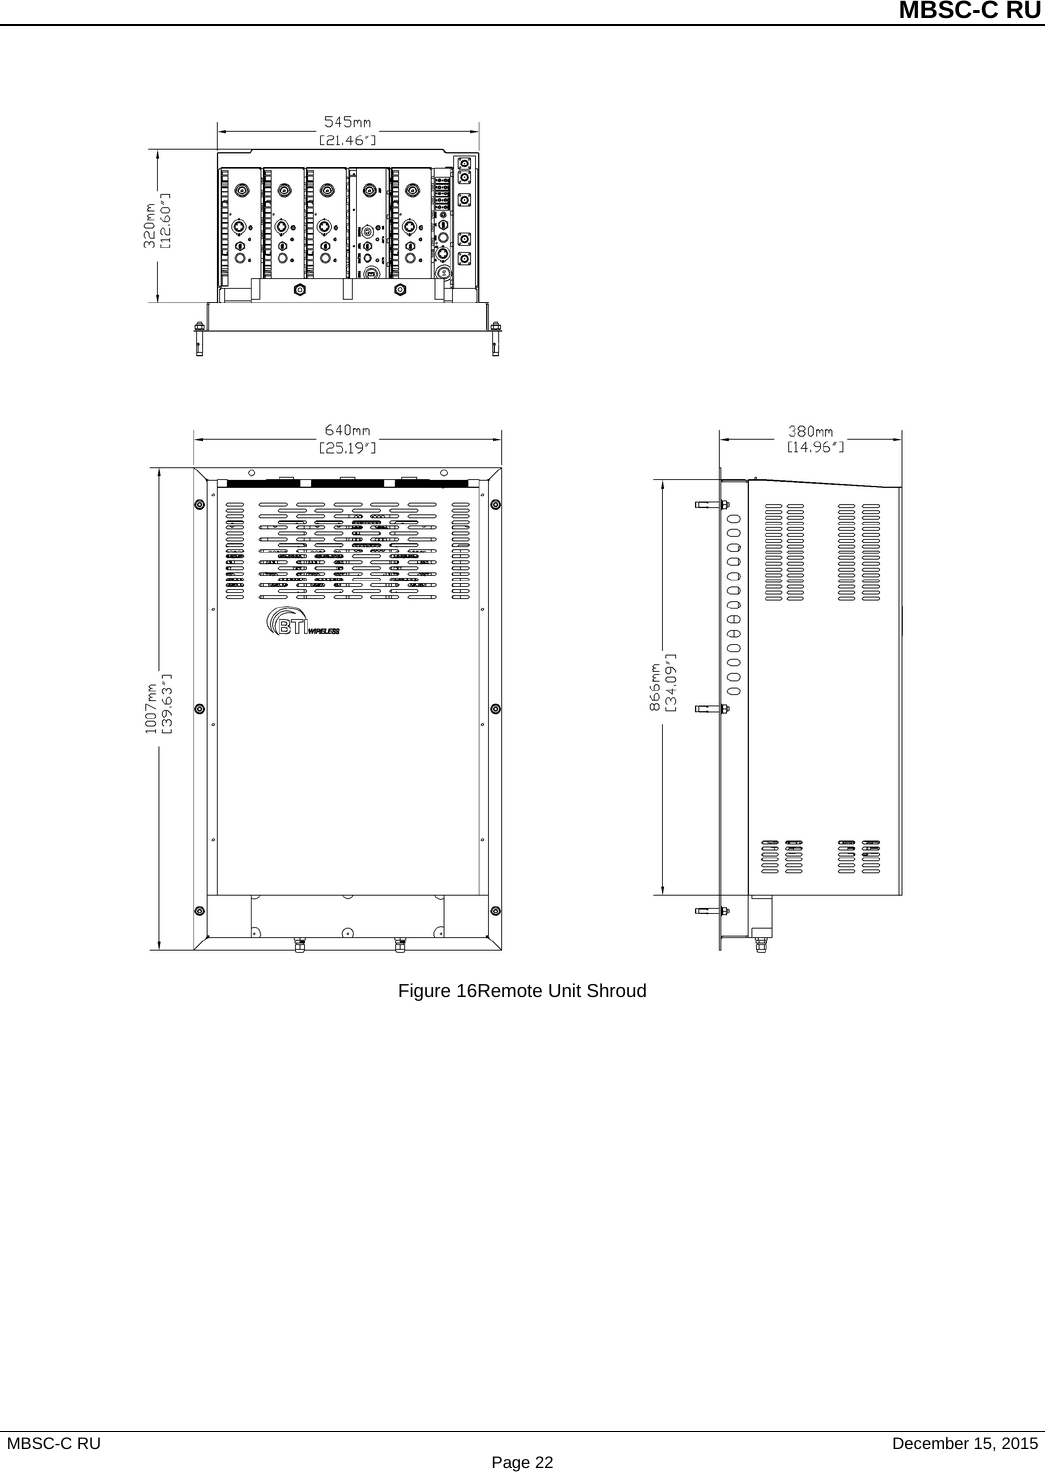          MBSC-C RU   MBSC-C RU                                     December 15, 2015 Page 22  Figure 16Remote Unit Shroud 